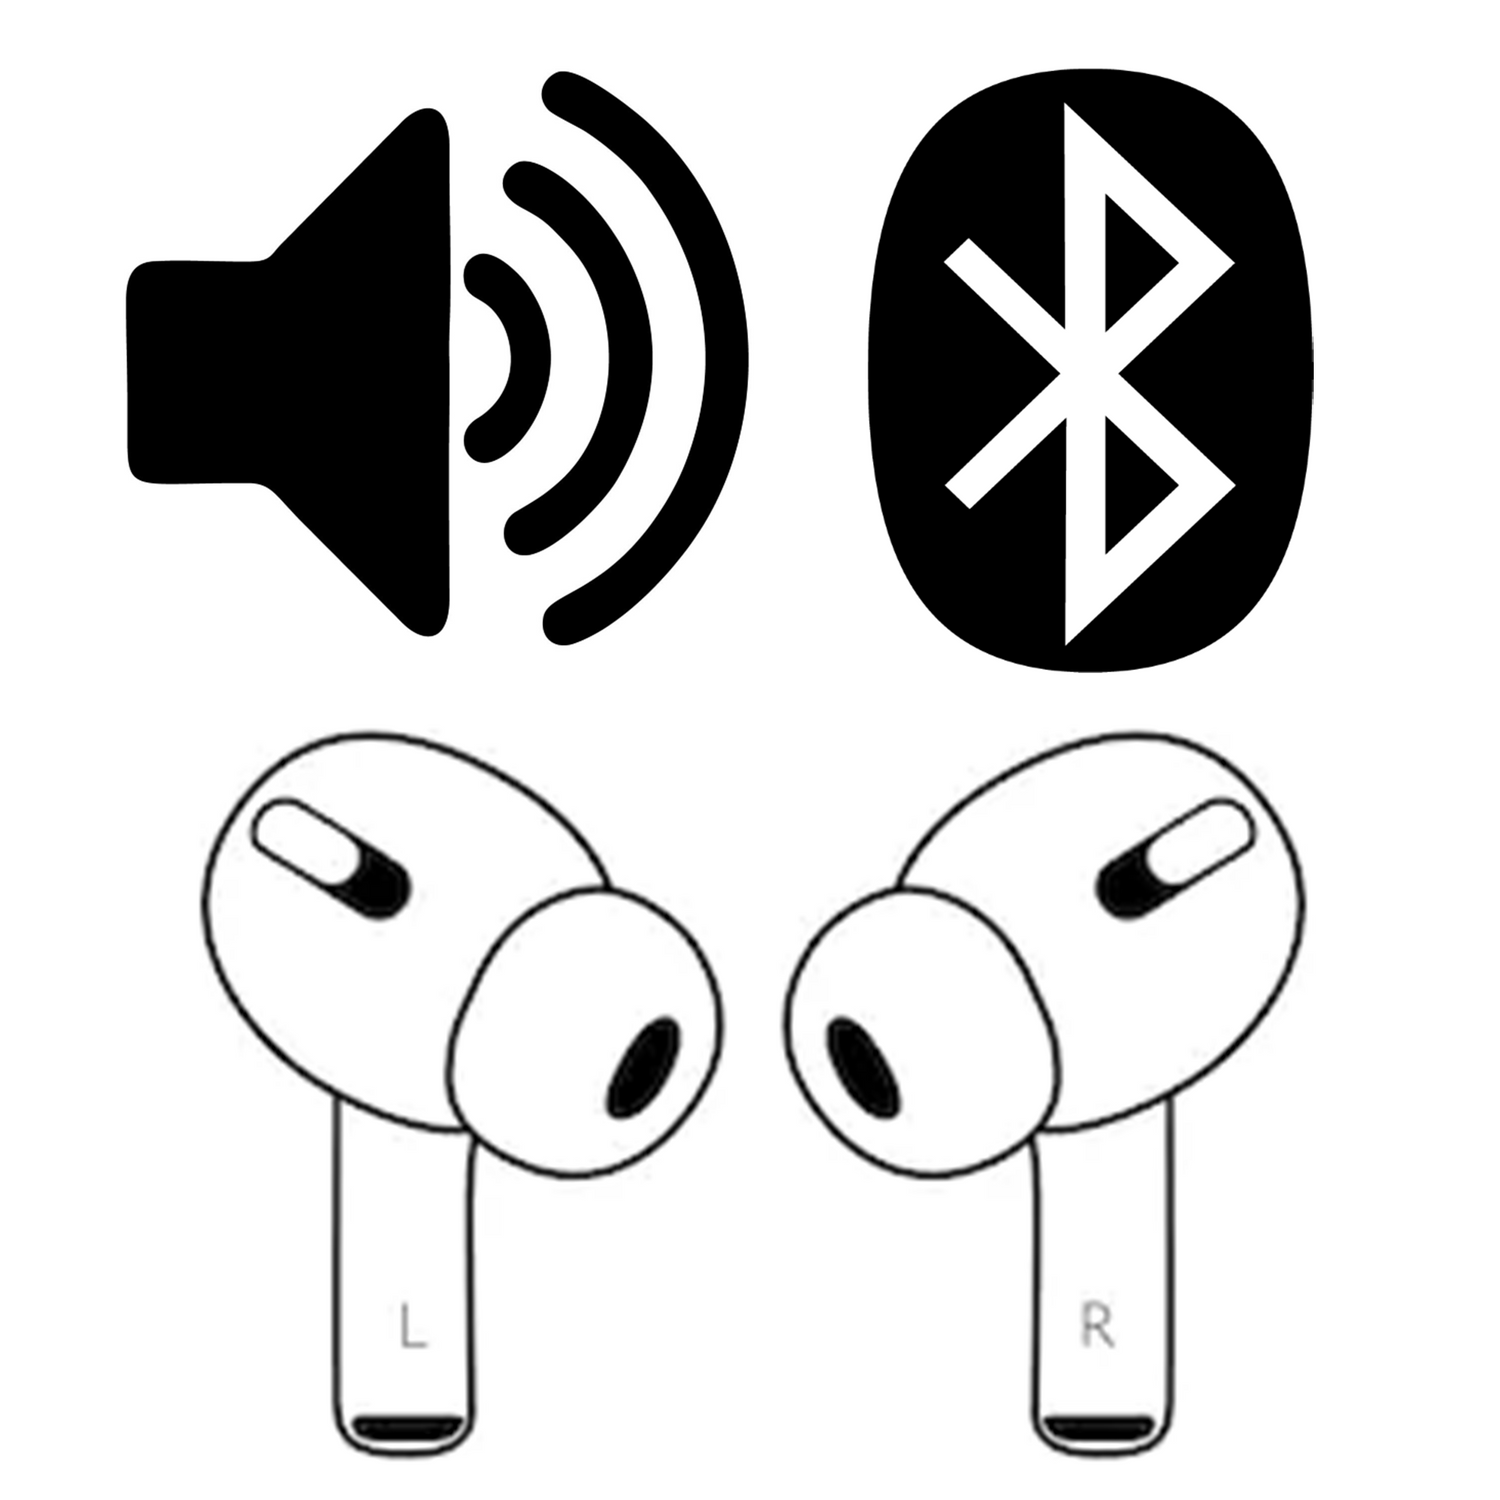 Bluetooth & Audio Accessories